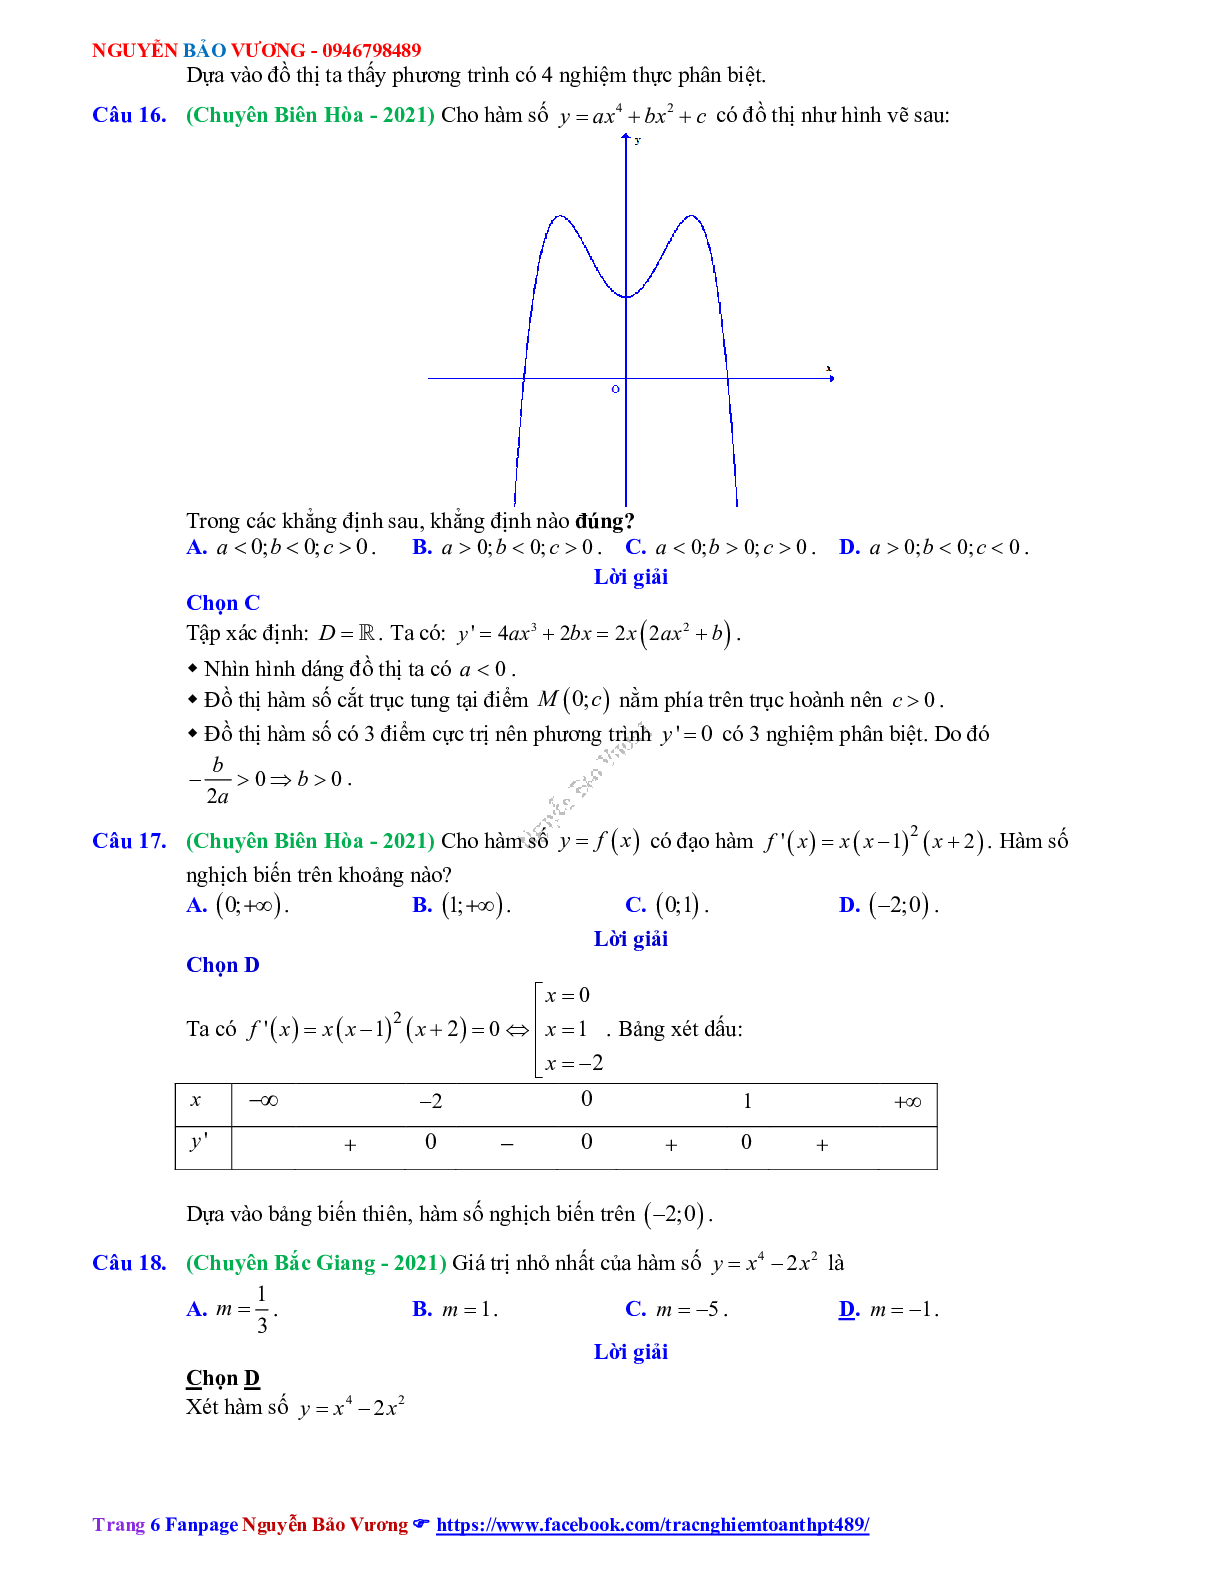 Chuyên đề Khảo sát hàm số - mức độ thông hiểu có đáp án môn Toán lớp 12 (trang 6)